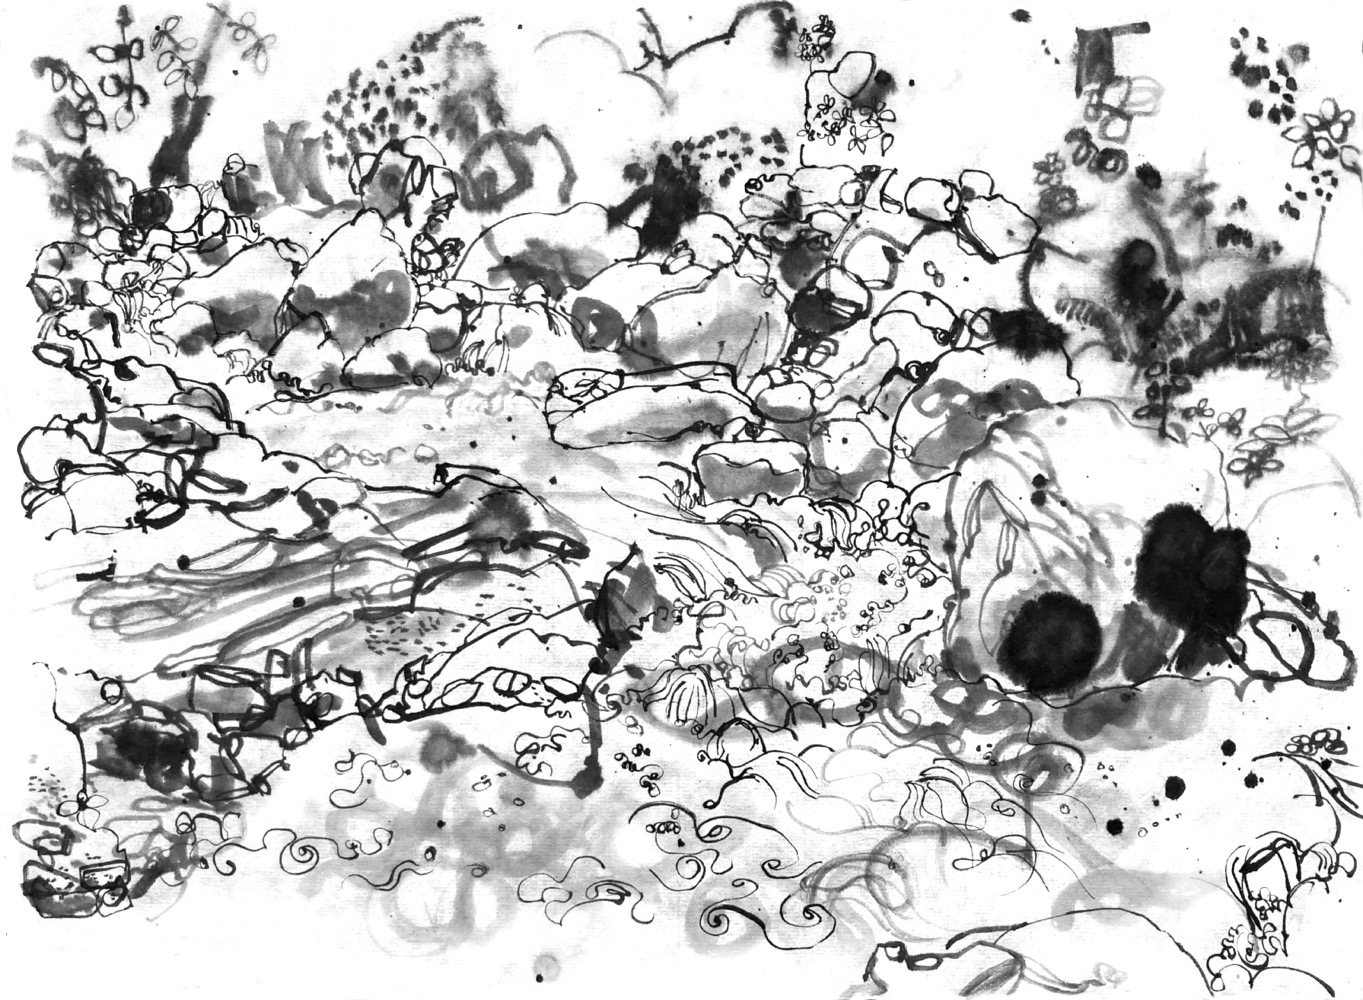 Ink drawing of water, wildly flowing between rocks.